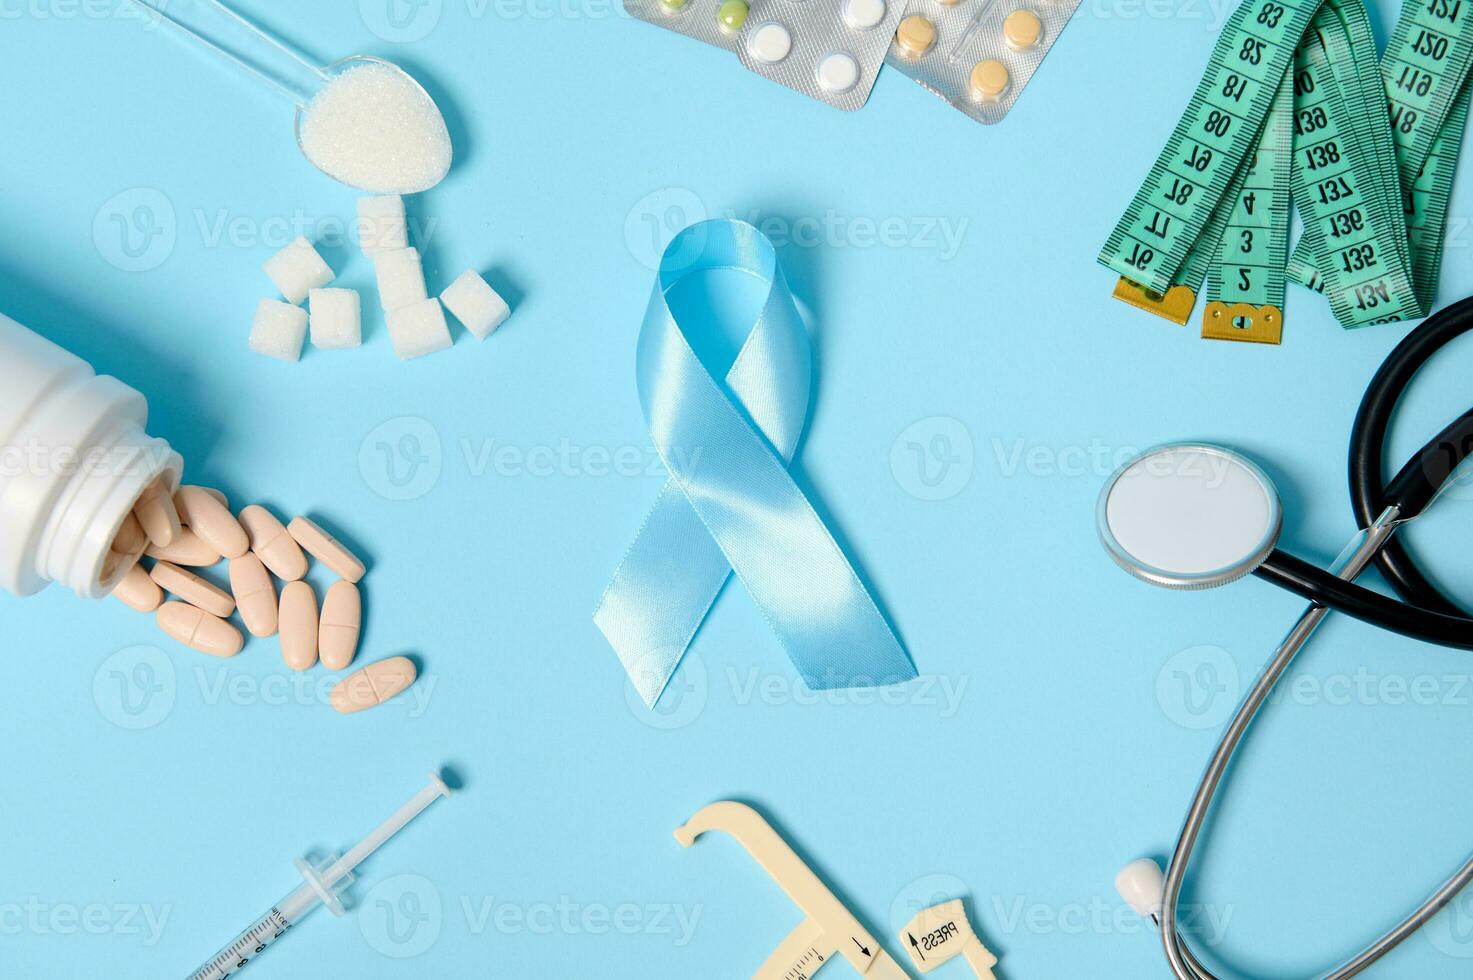 azul diabetes consciência fita às colori fundo Centro com espalhados farmacêutico pílulas, bolhas do comprimidos, insulina seringa, estetoscópio, pinça , medindo fita e refinado branco açúcar foto